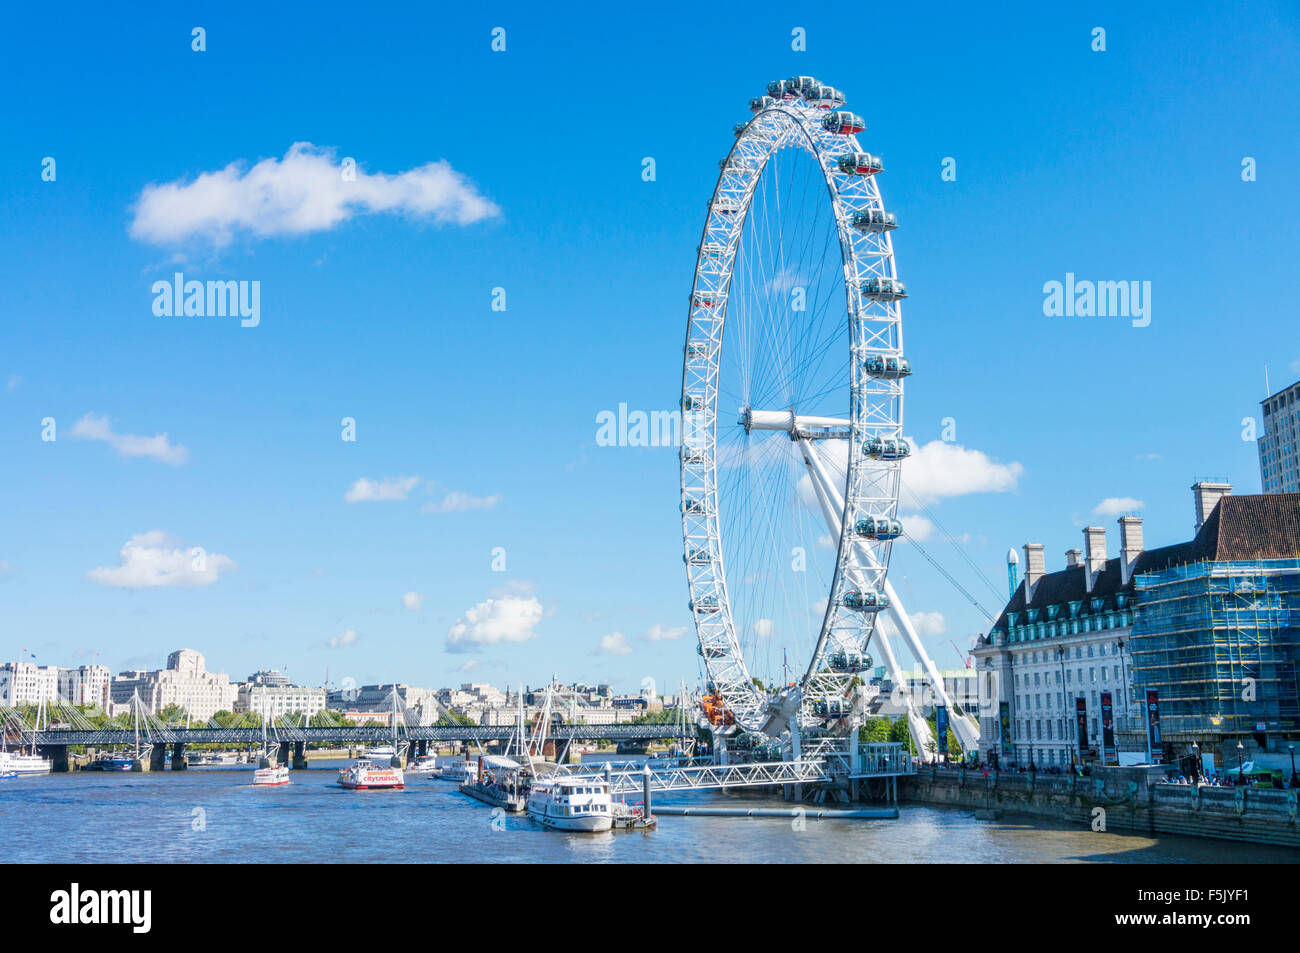 Le London Eye, une grande roue de Ferris carousel sur la rive sud de la Tamise Londres Angleterre GO UK EU Europe Banque D'Images